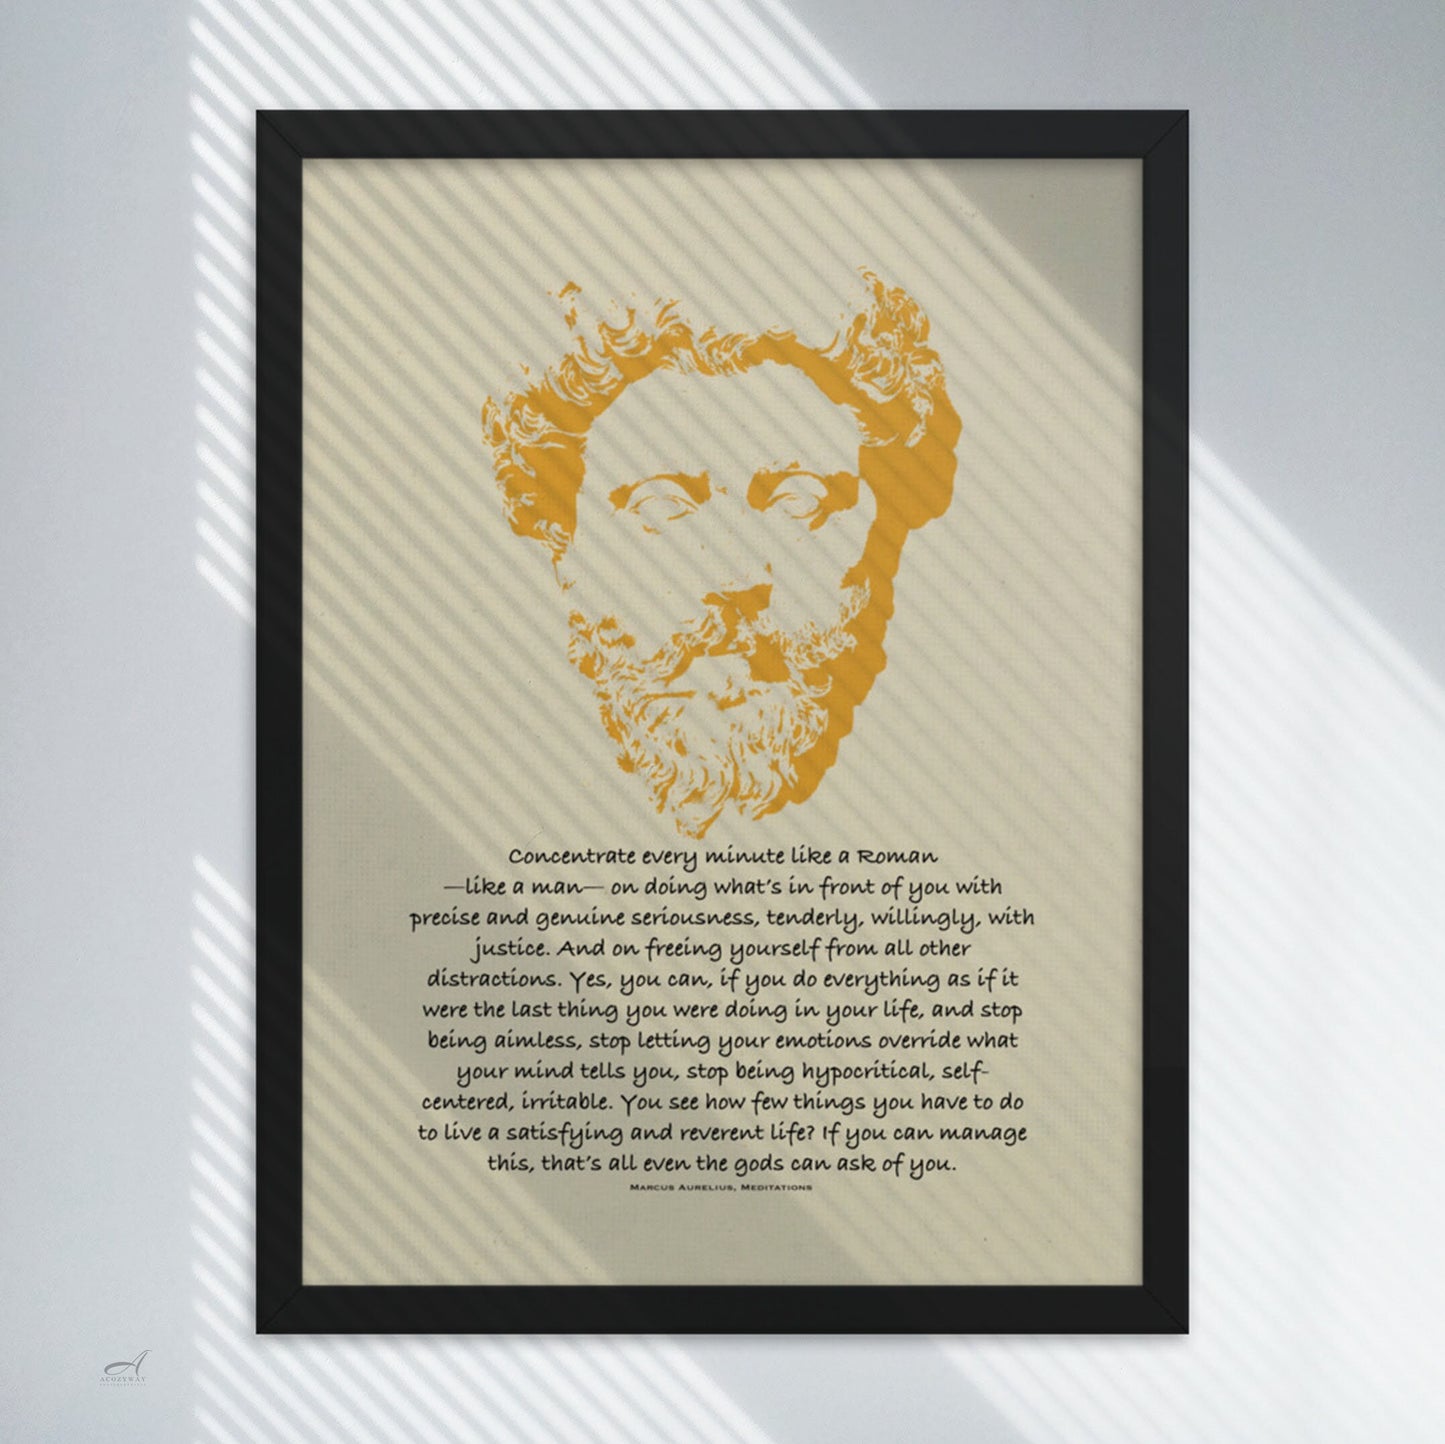 Marcus Aurelius quote Print black on light beige with Marcus Aurelius portrait illustration in yellow color black framed art poster